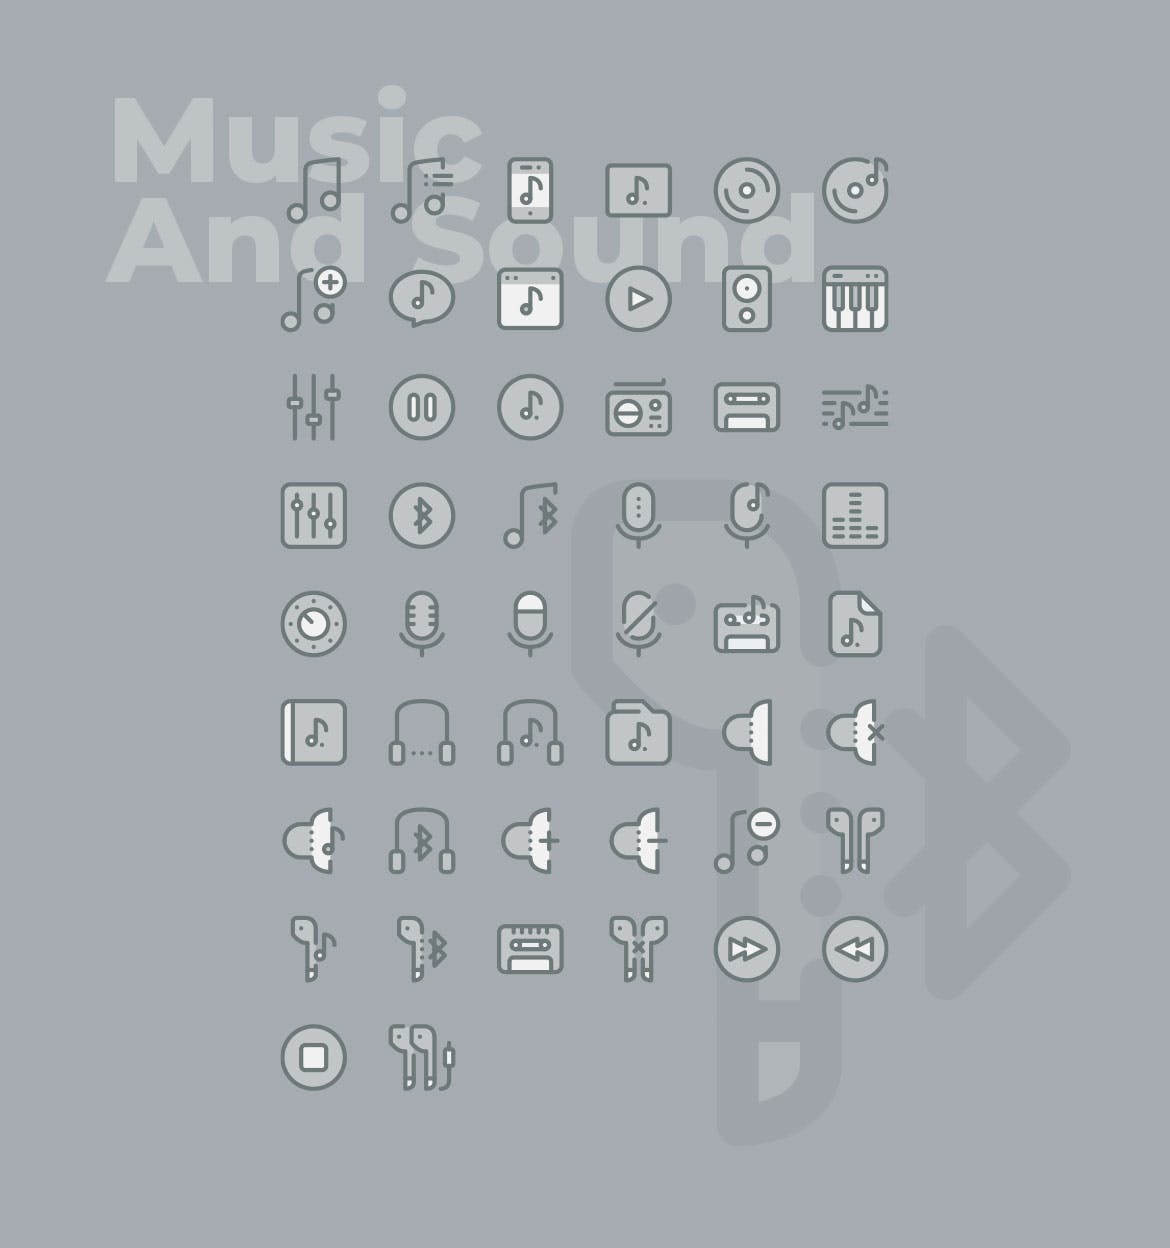 50枚音乐&声音主题矢量双色调素材库精选图标 50 Music and Sound Icons  –  Two Tone Style插图(1)